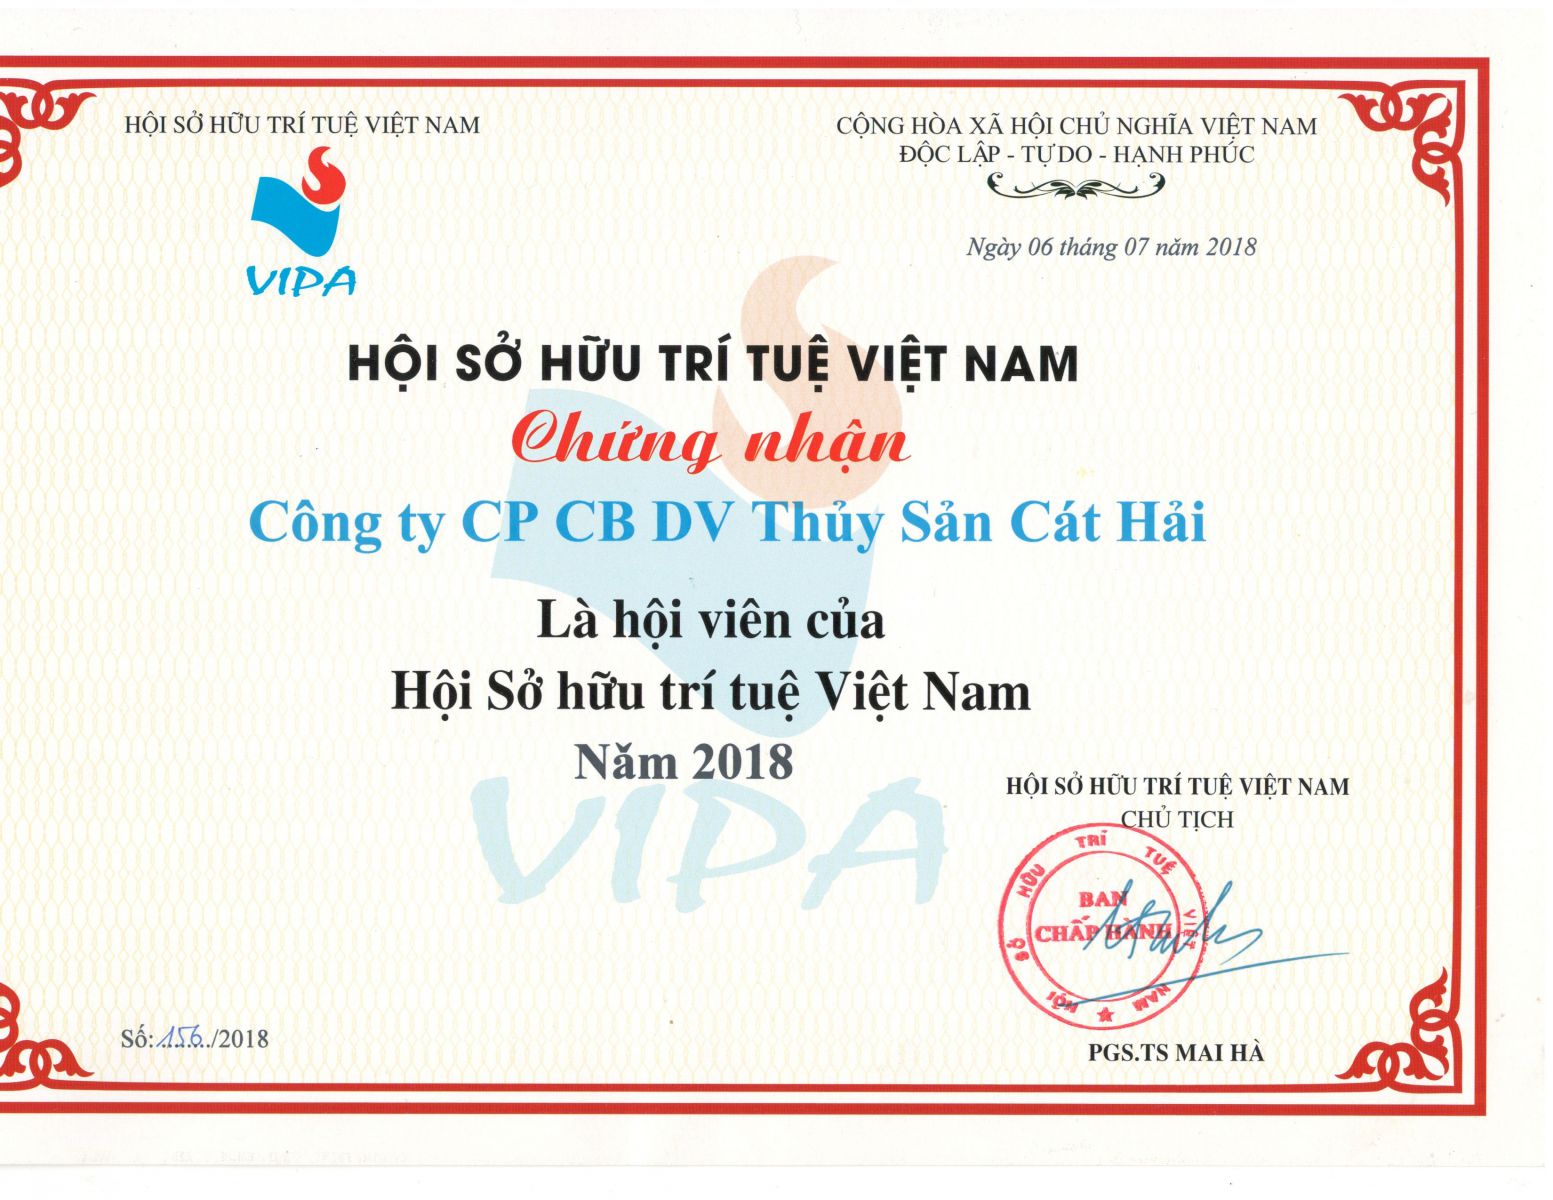 Chứng nhận hội sở hữu trí tuệ Việt Nam